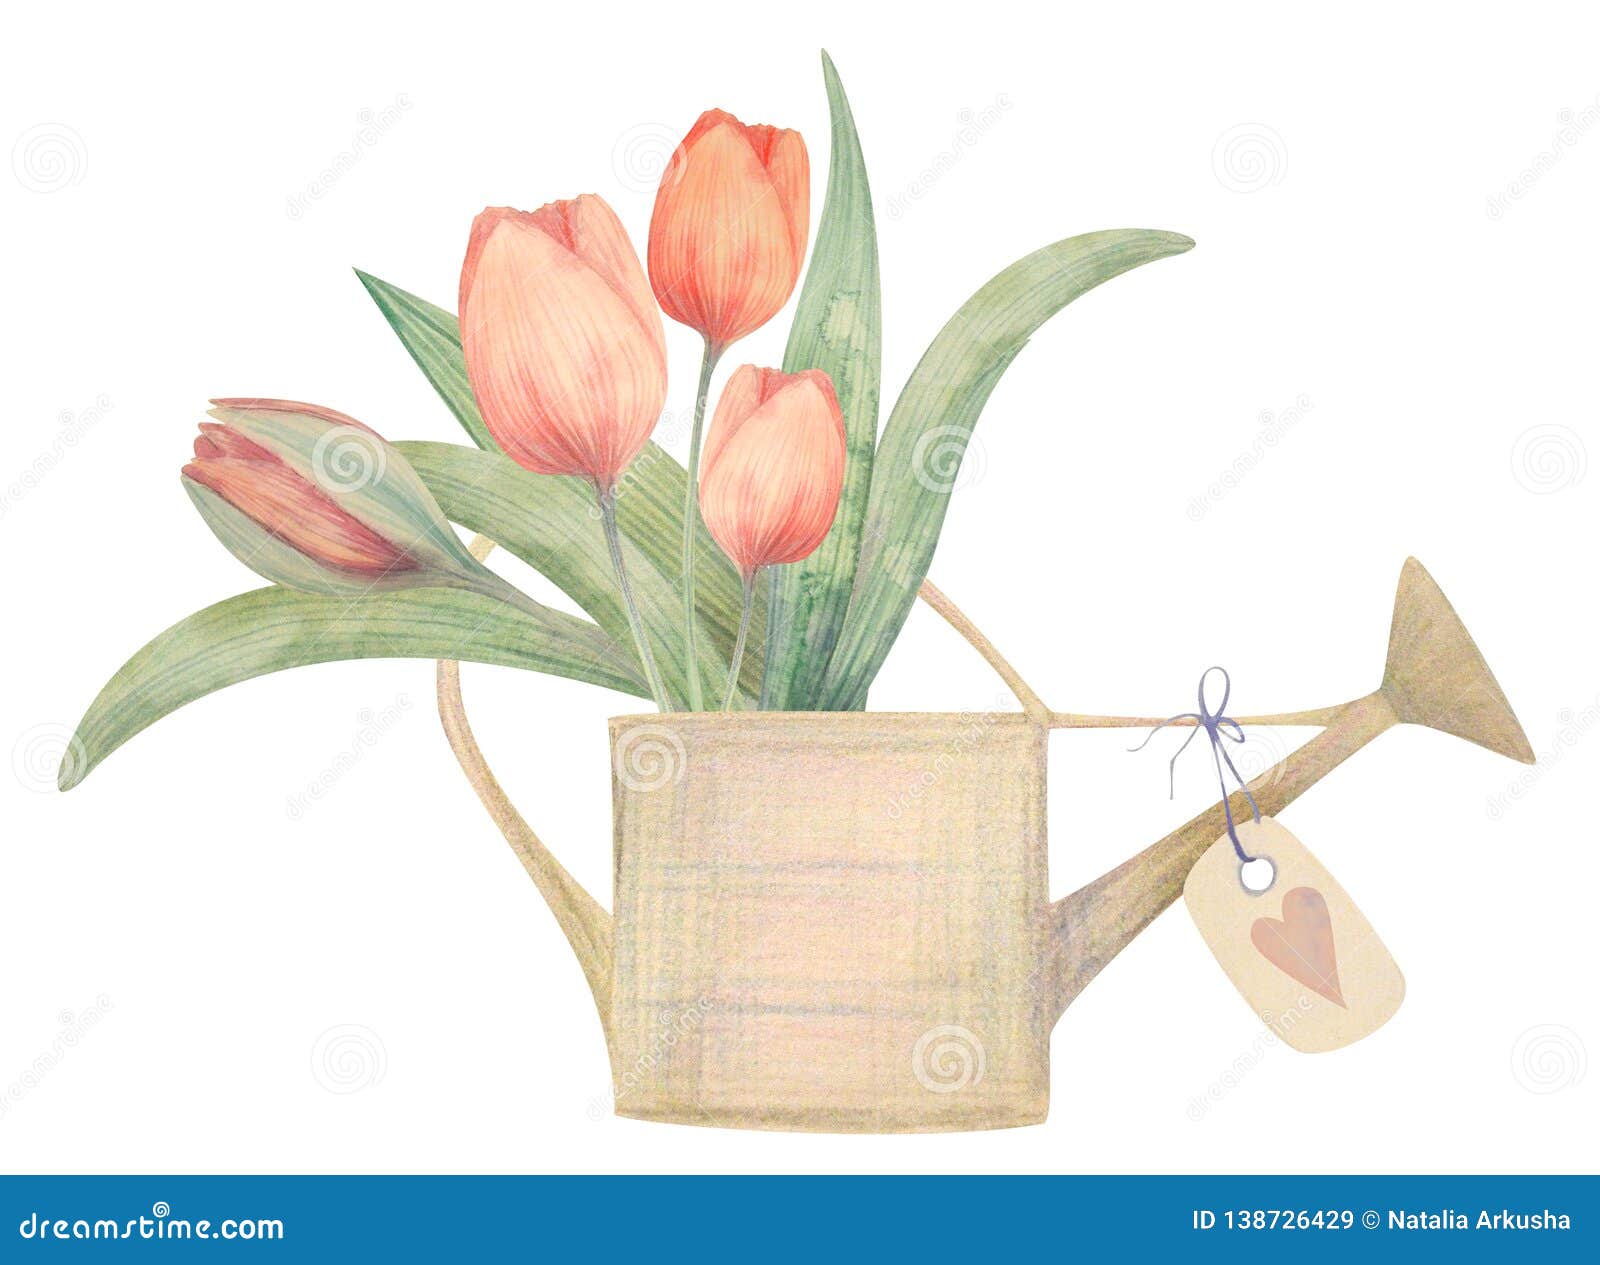 Тюльпаны в лейке рисунок